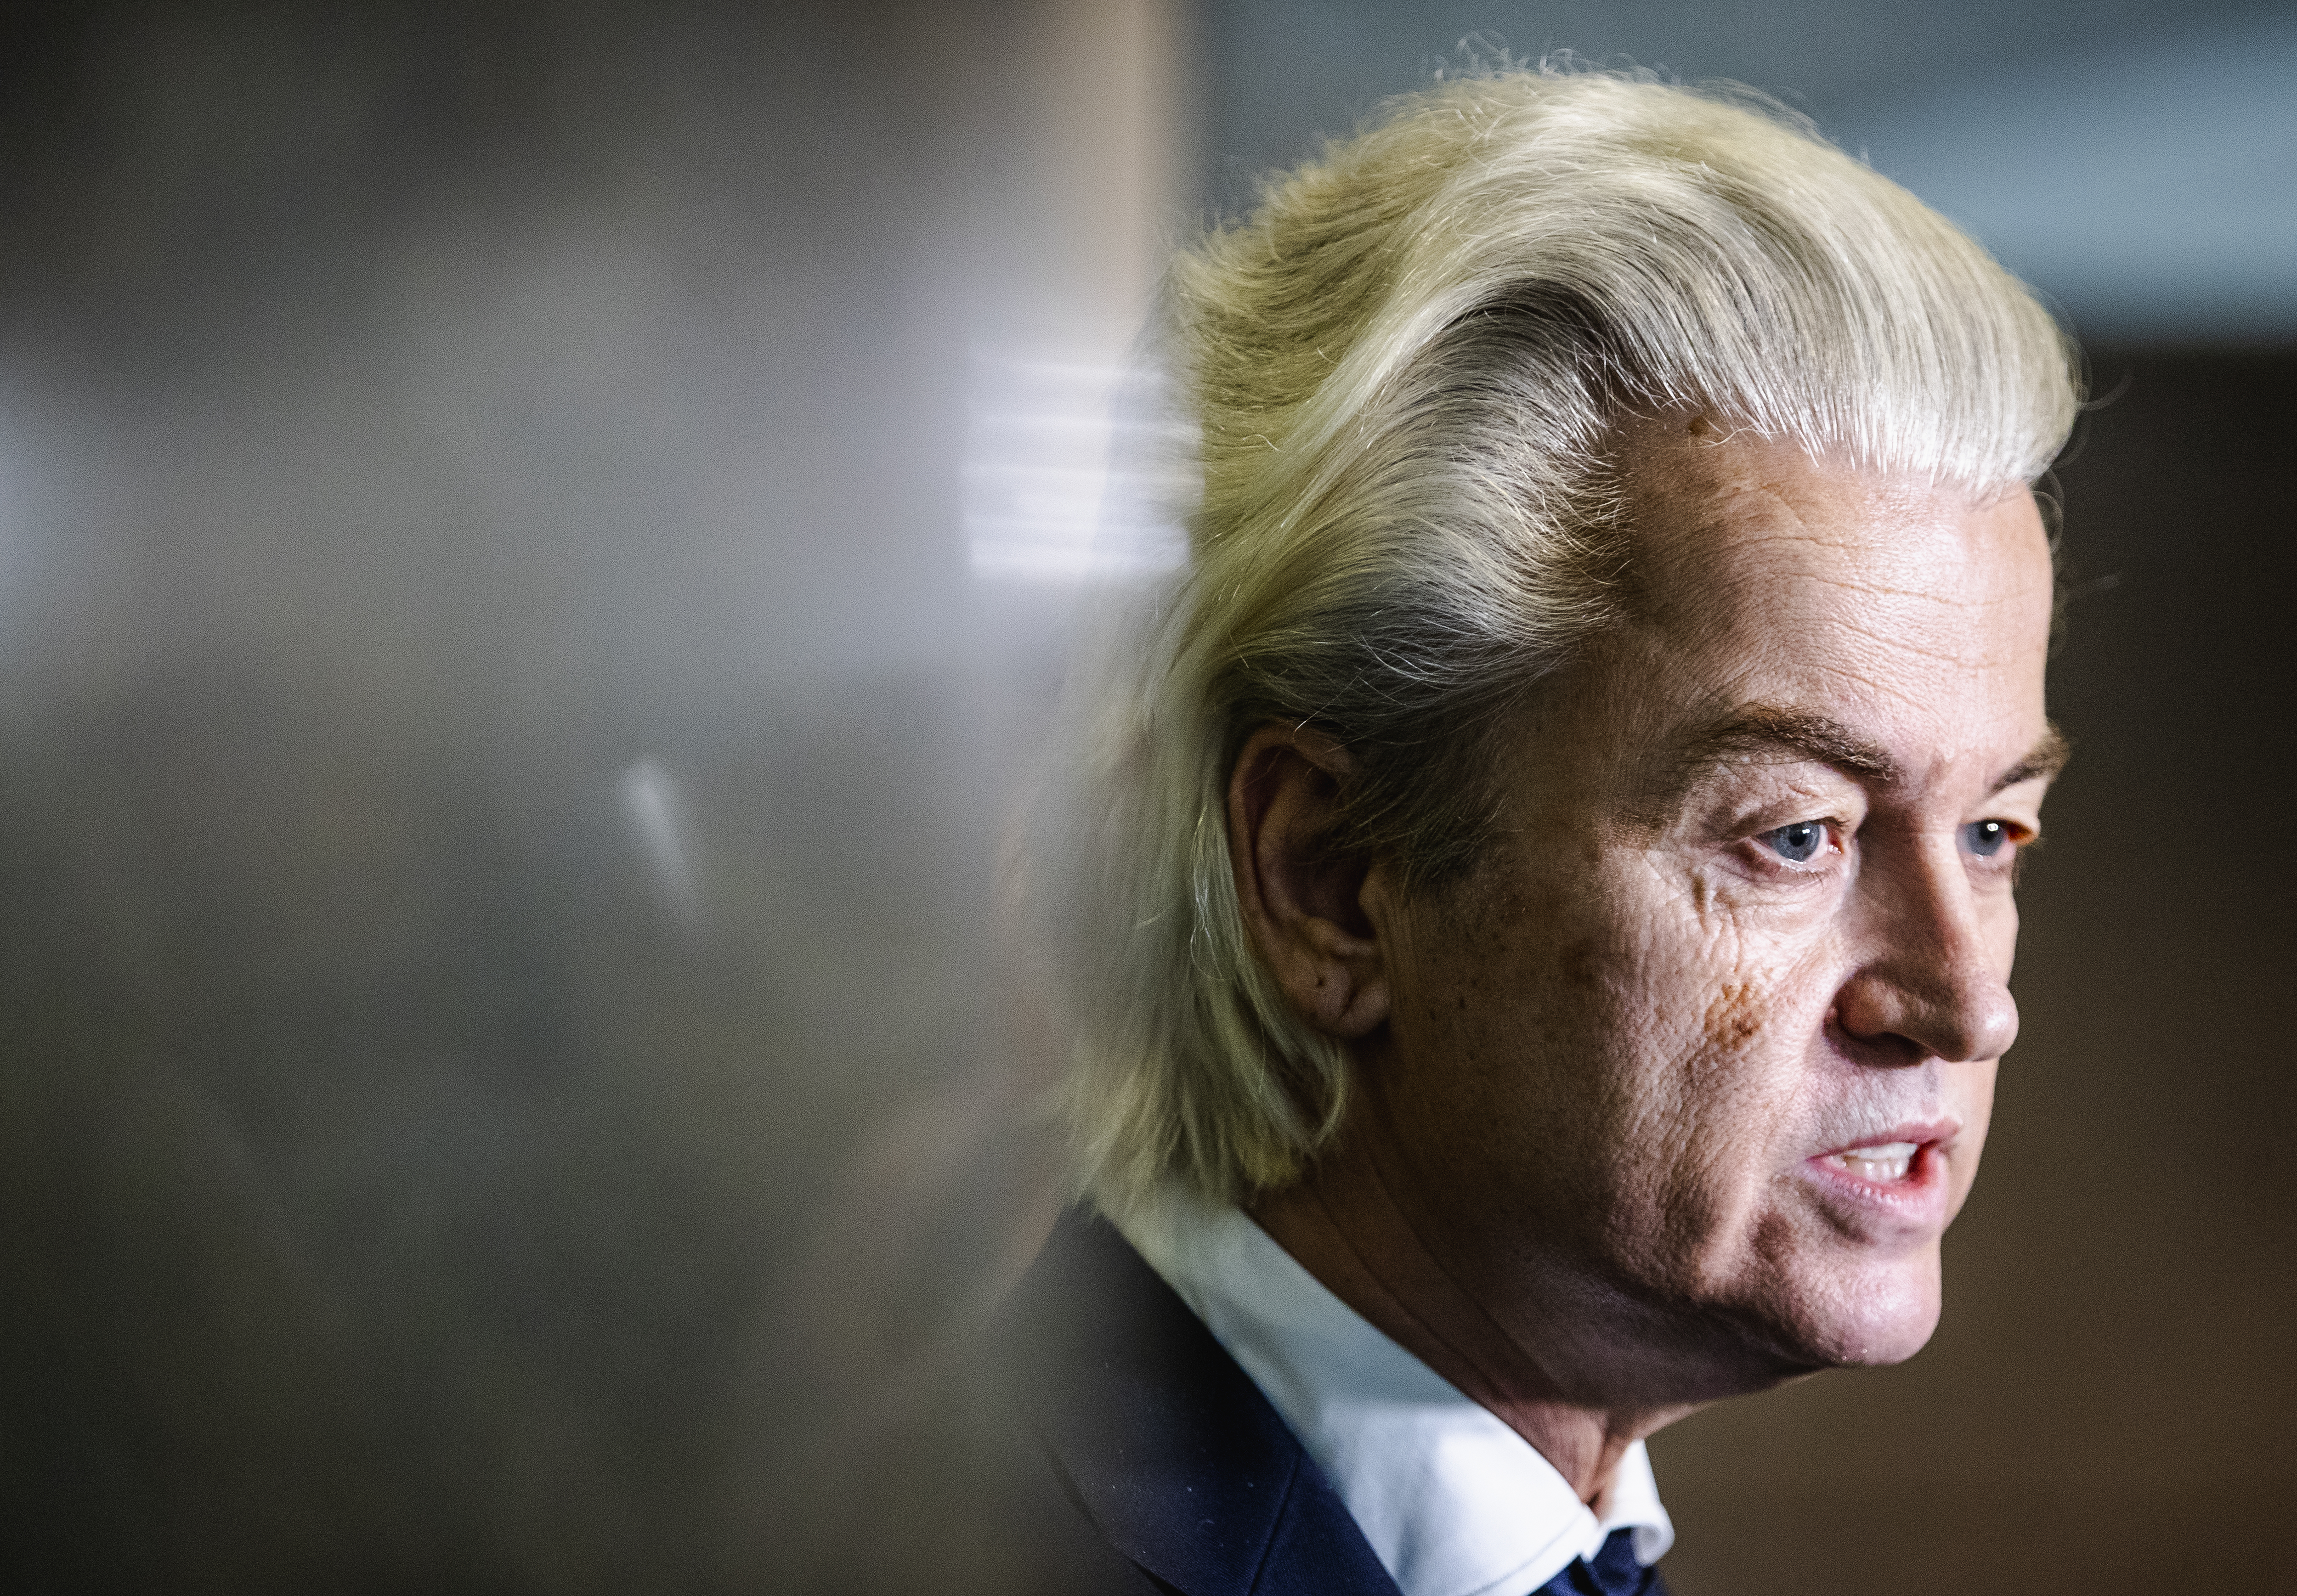 Máris belebukott egy csalással kapcsolatos botrányba a Wilders által kinevezett koalíciós tárgyaló